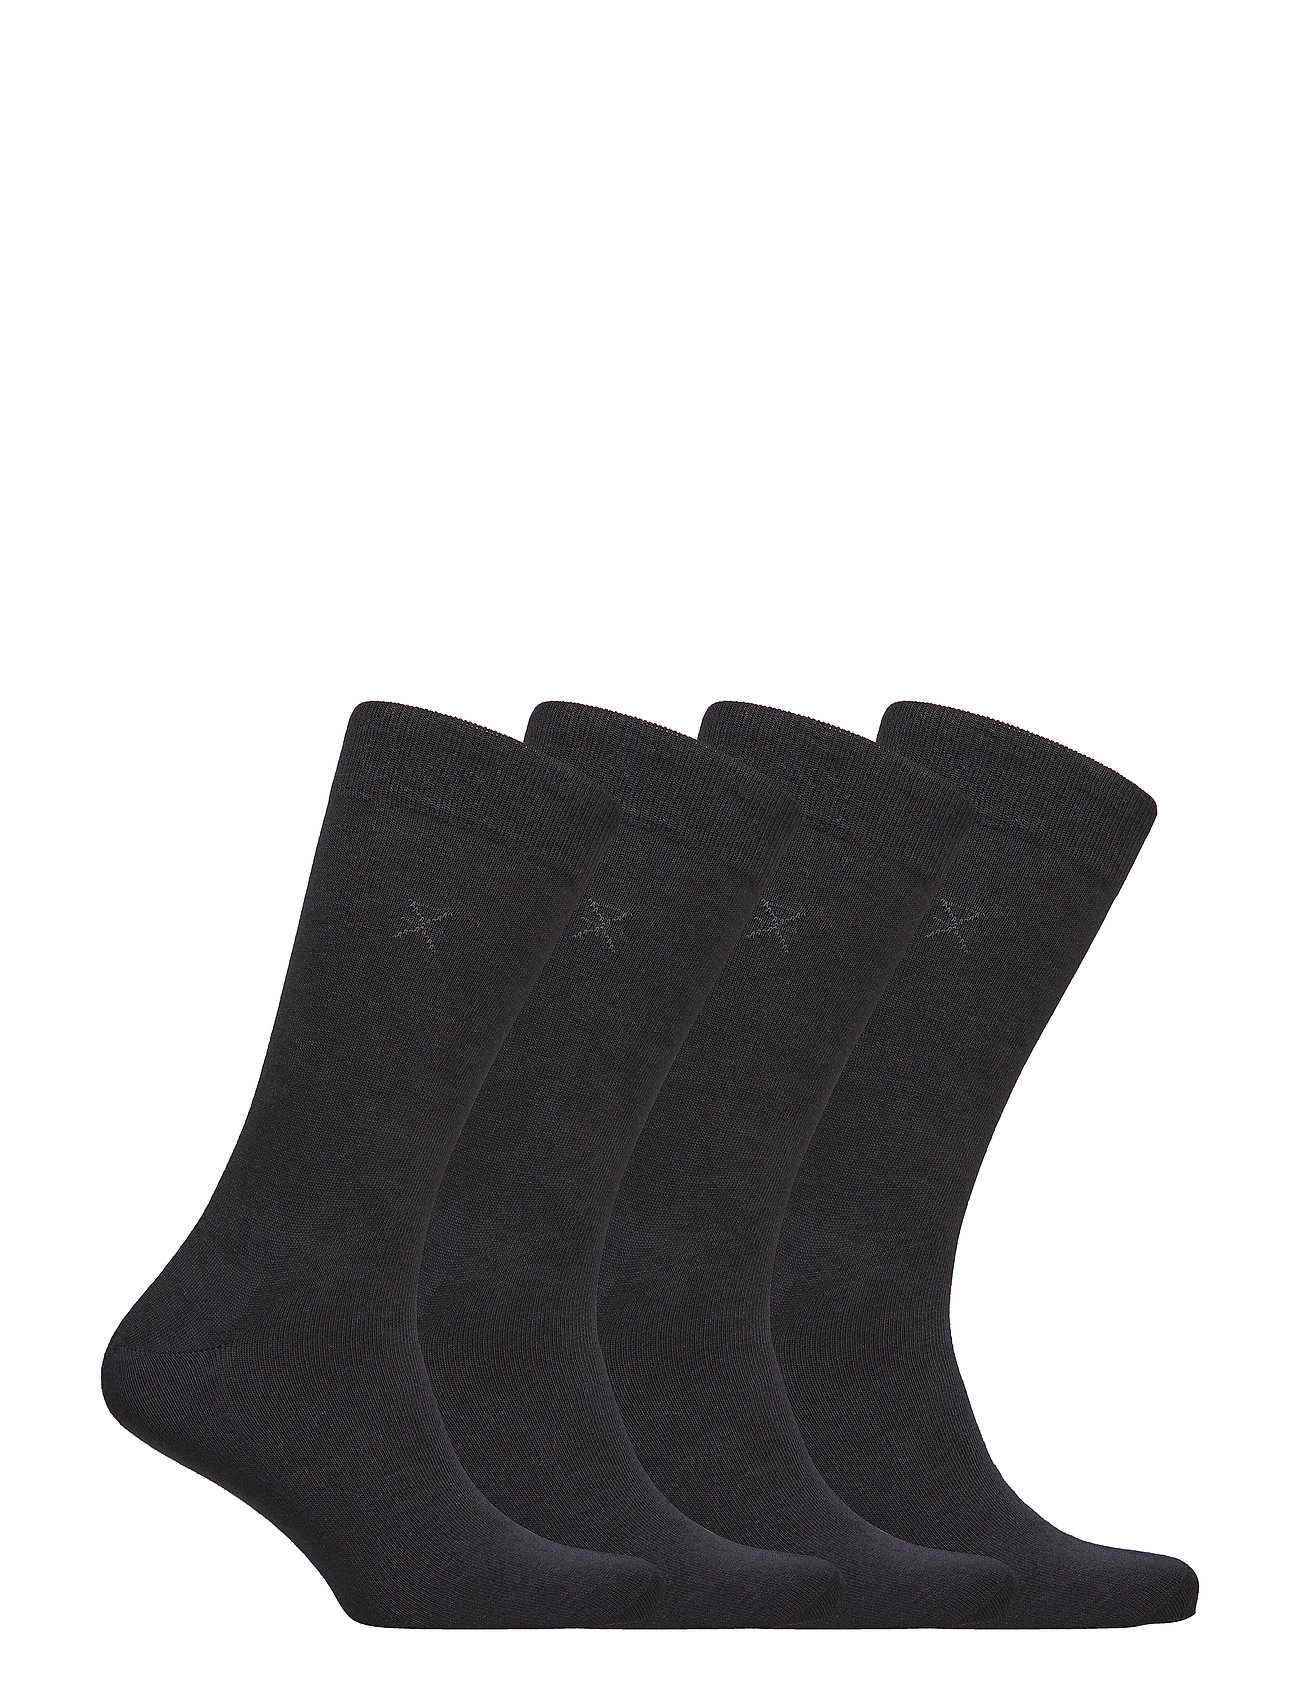 JBS of Denmark - JBS of DK socks 4-pack - black - 1